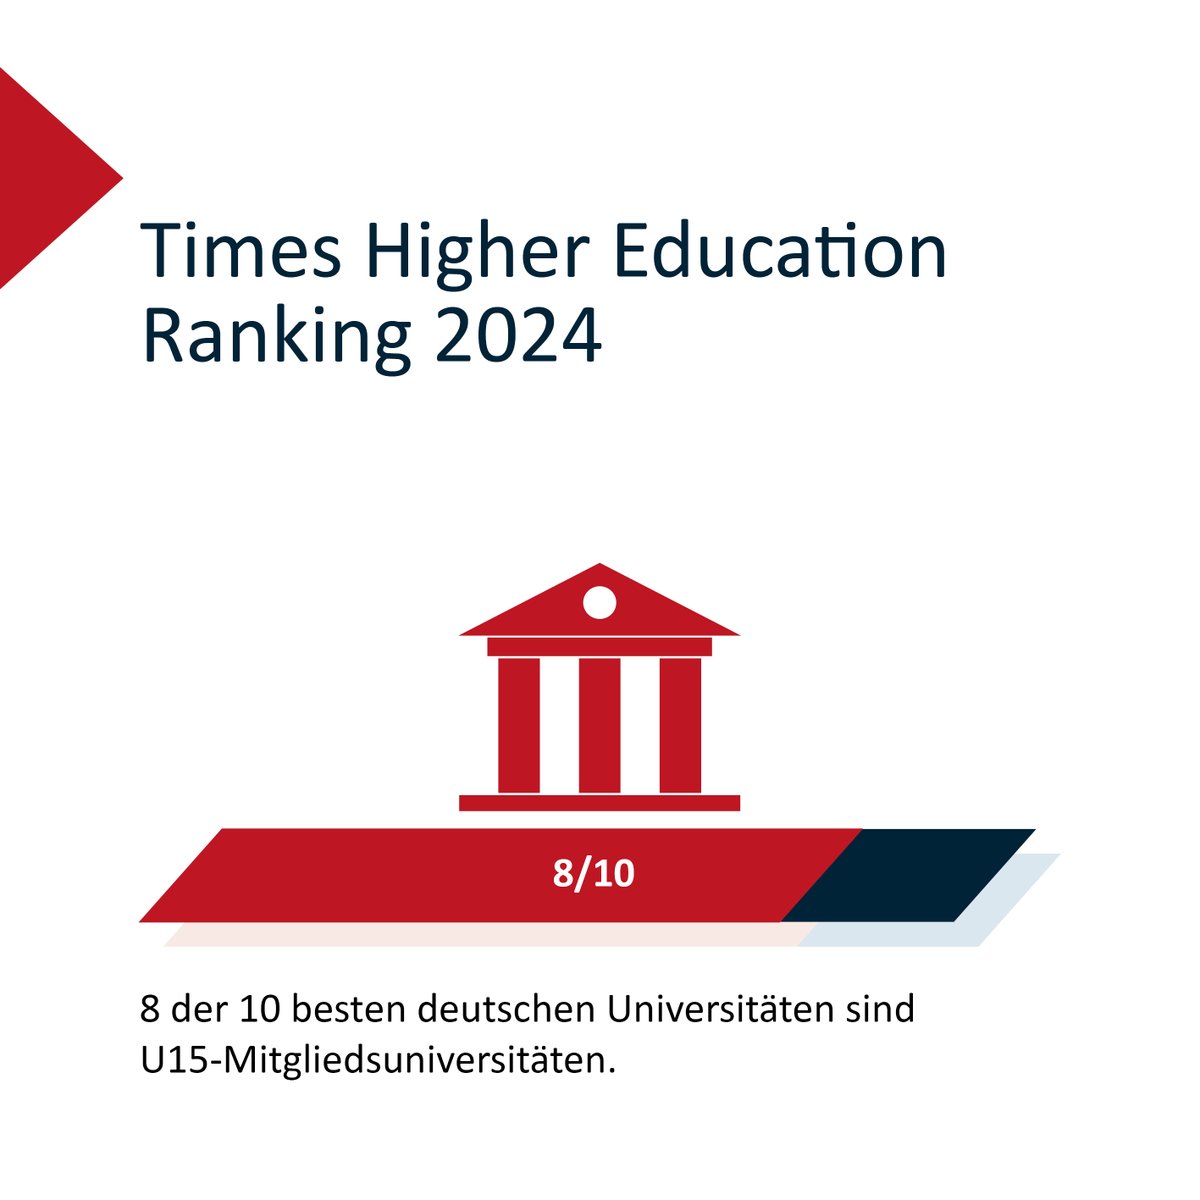 🎉 Beeindruckendes Abschneiden der U15-Universitäten im #THEranking2024! 📚 8 der 10 besten deutschen Unis gehören zu U15. 6 U15-Unis von insgesamt 8 deutschen Unis sind unter den TOP 100 weltweit 🌍 und unglaubliche 13 U15-Unis schaffen es unter die 🌎 TOP 200. #WUR2024